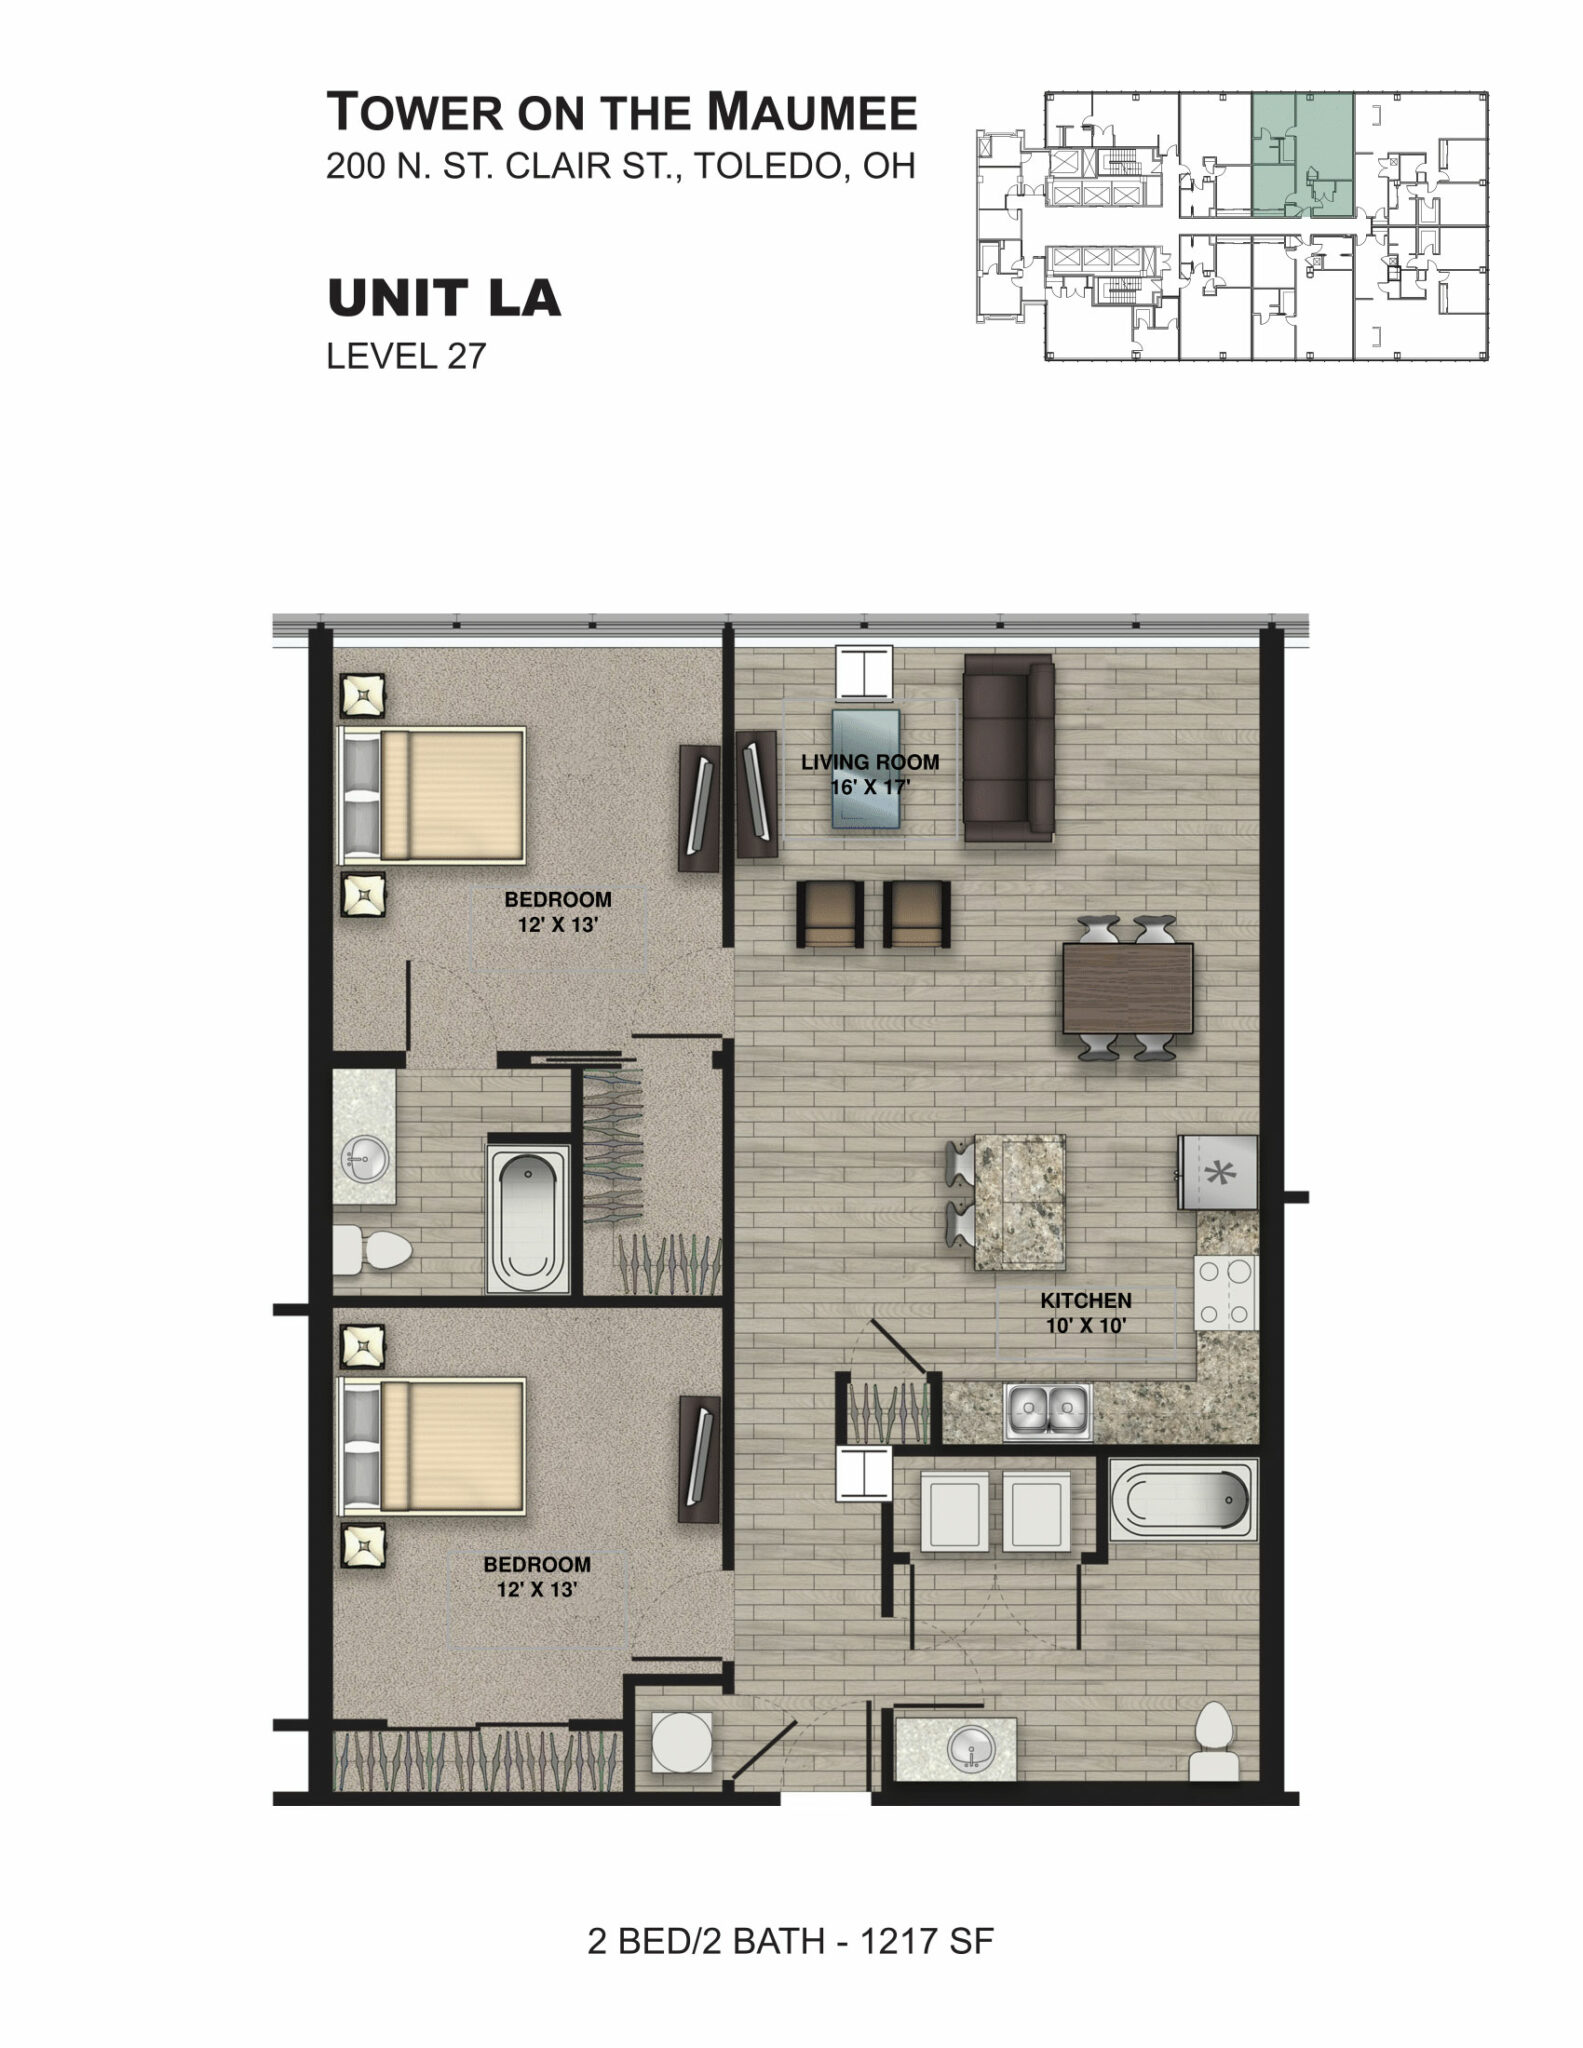 2 Bedroom Unit LA 2D Floorplan, Tower on the Maumee, Toledo, OH